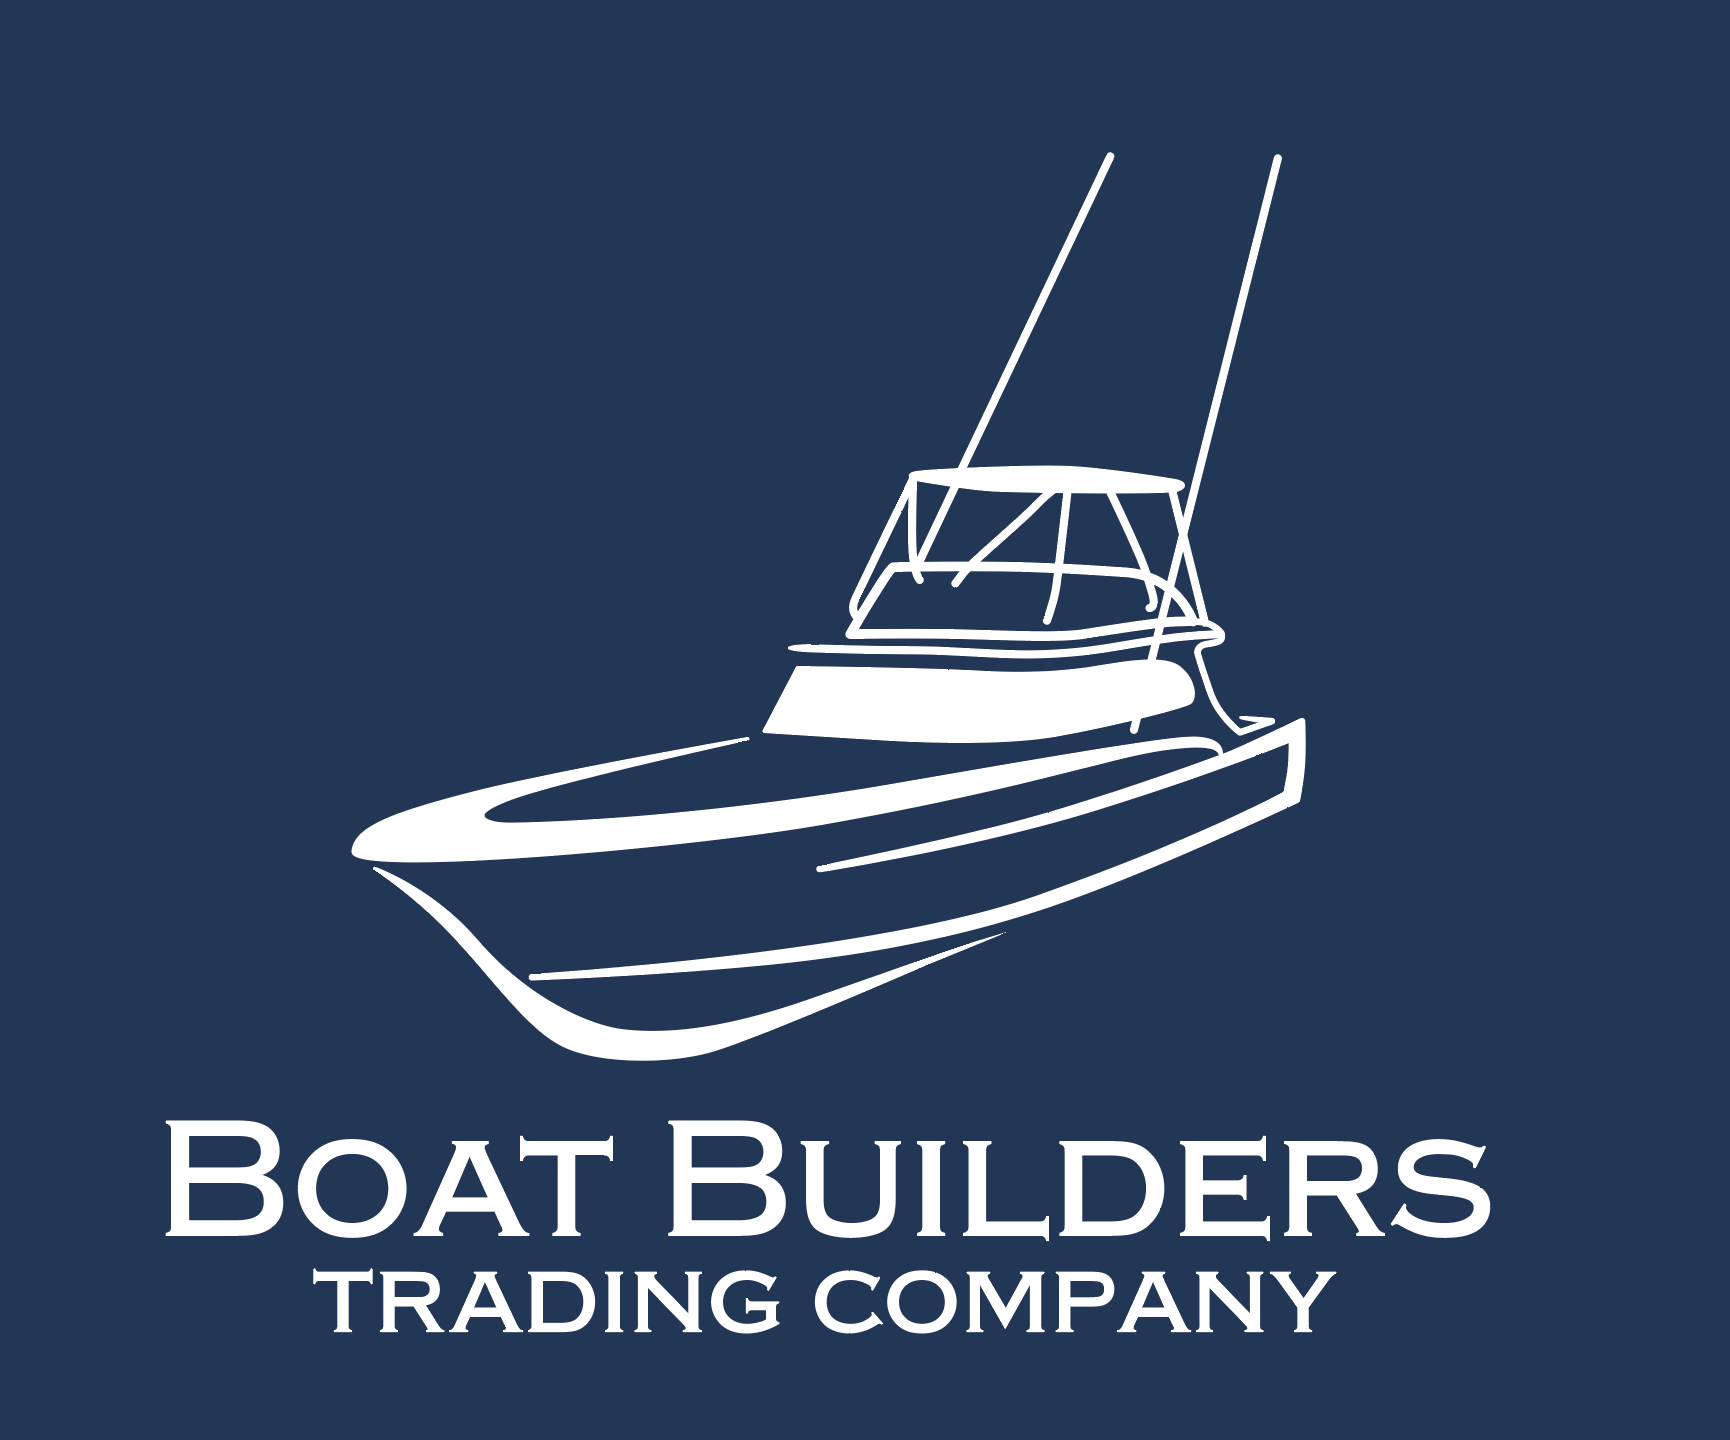 Boat Builders Trading   Custom White Sportfish   Long Sleeve